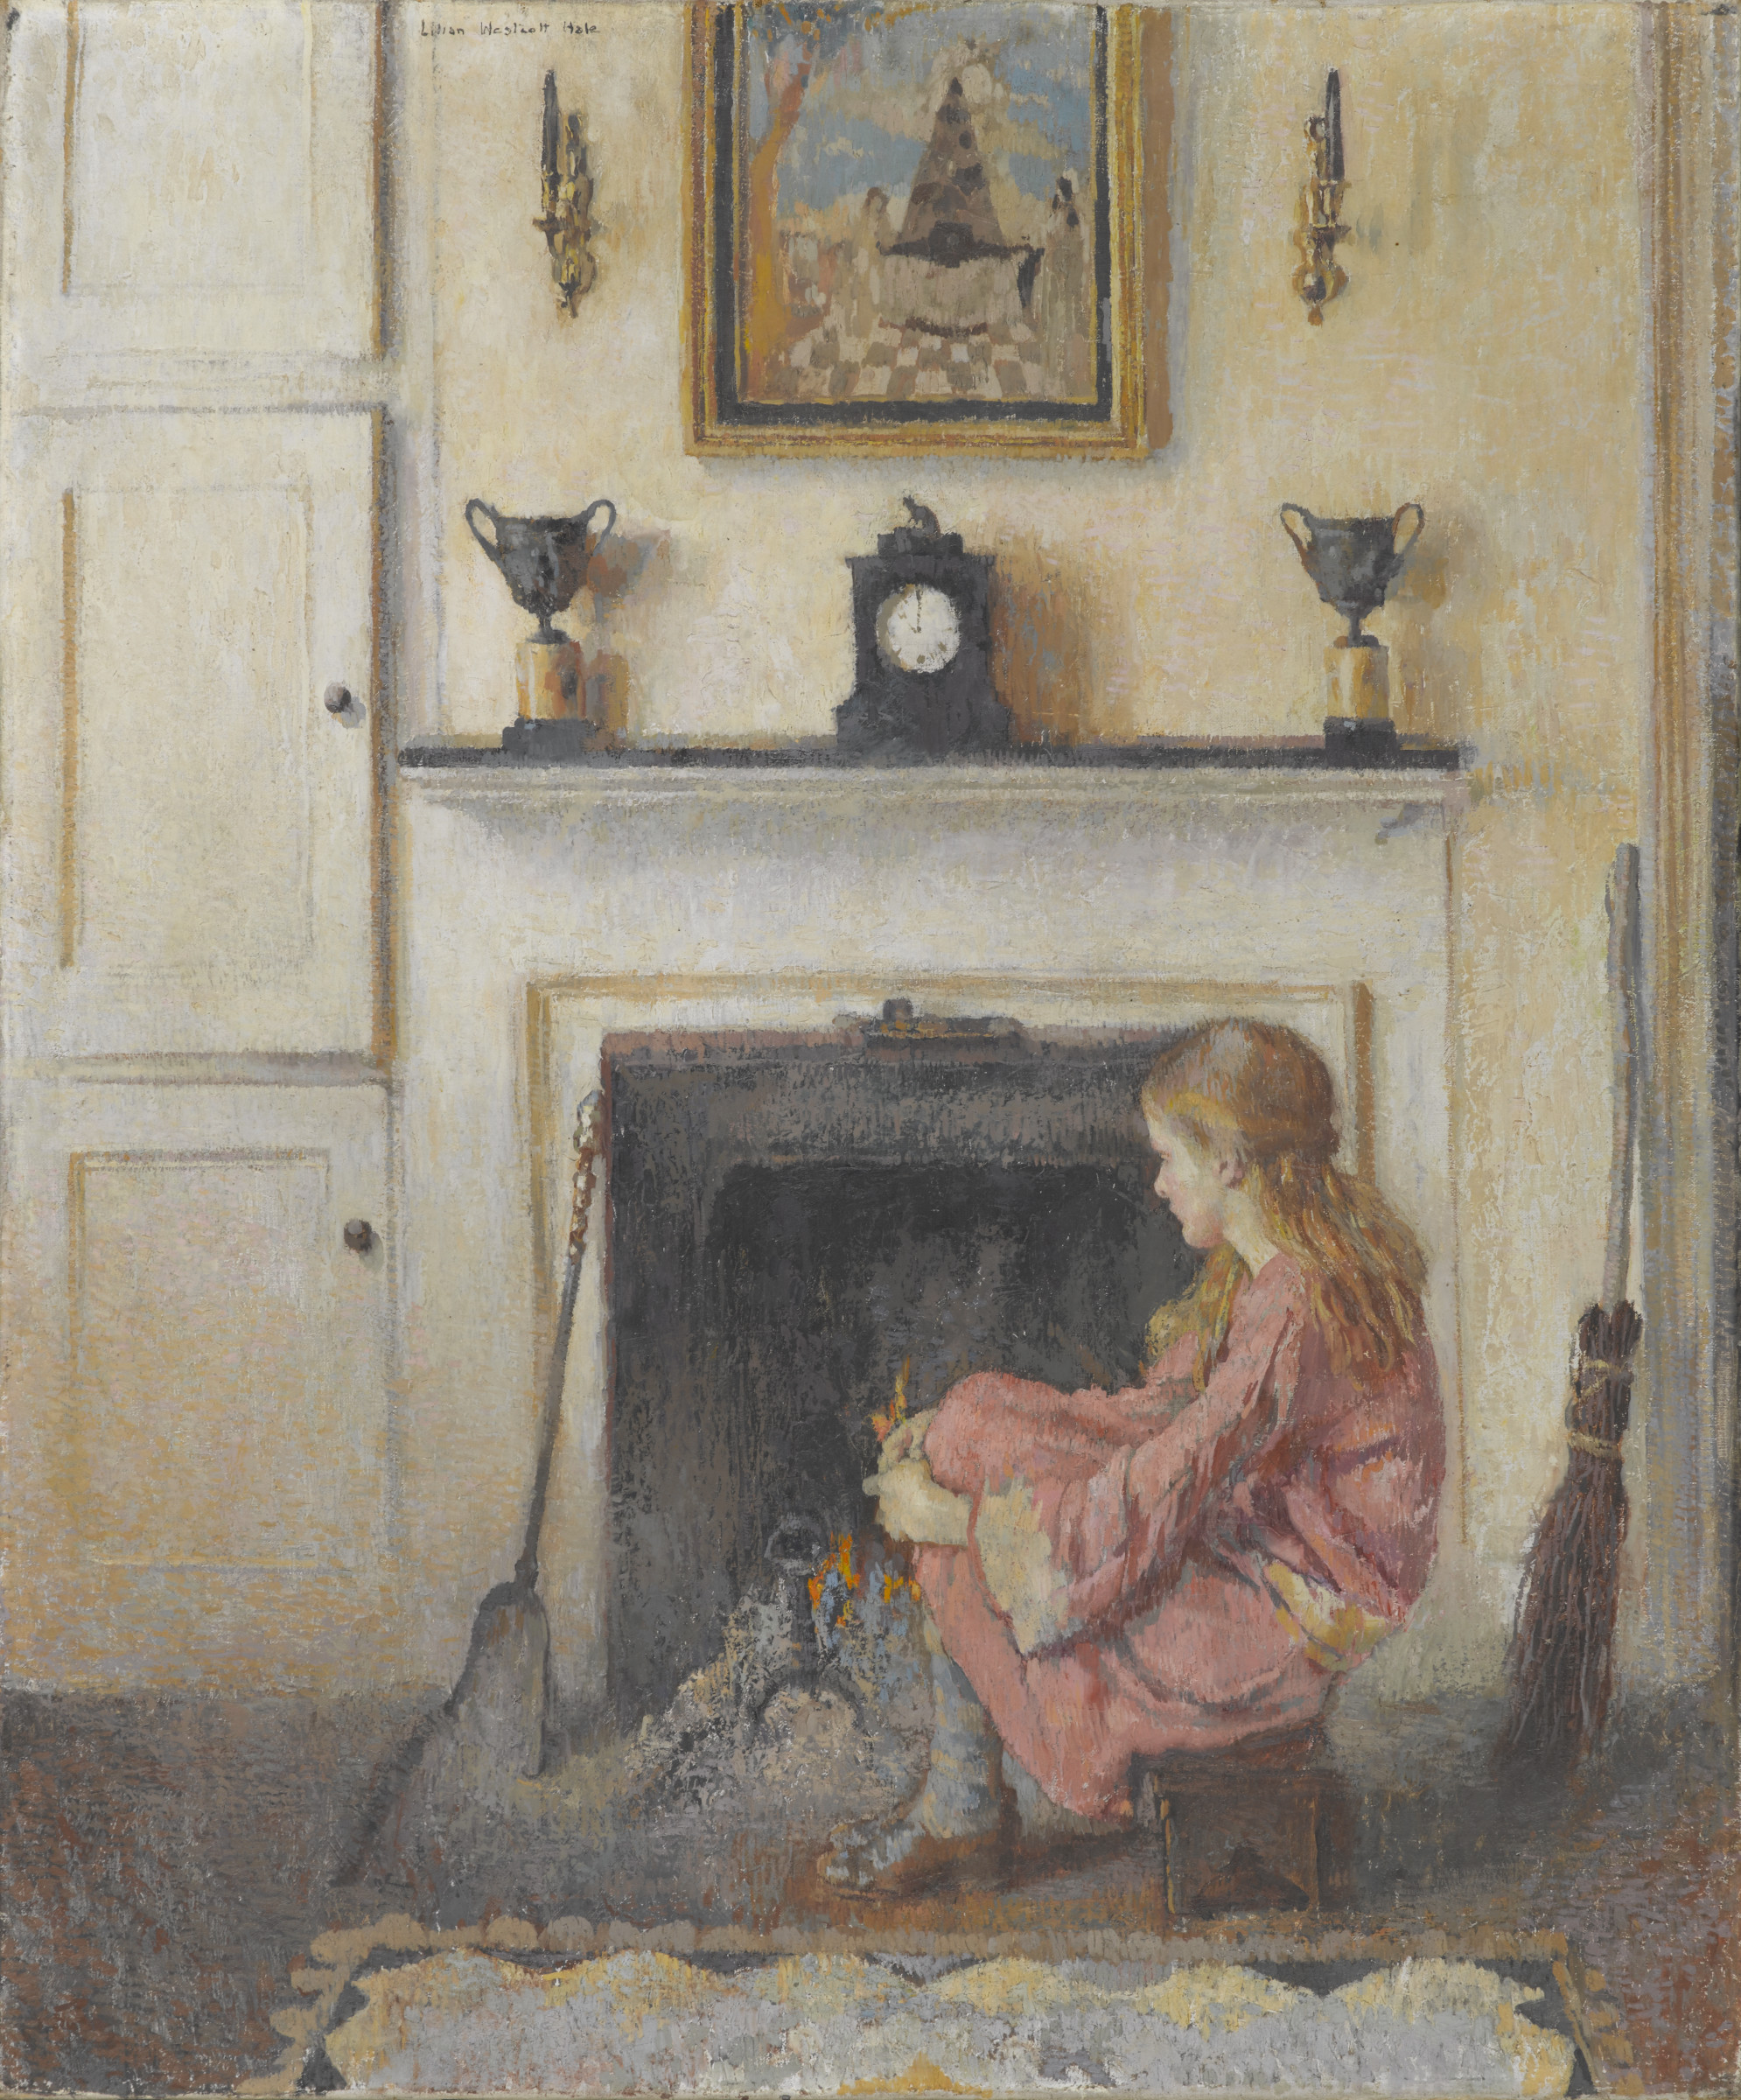 آليس جالسة بجانب المدفأة by Lilian Westcott Hale - 1925 م - 91.4 في 76.2 سم 